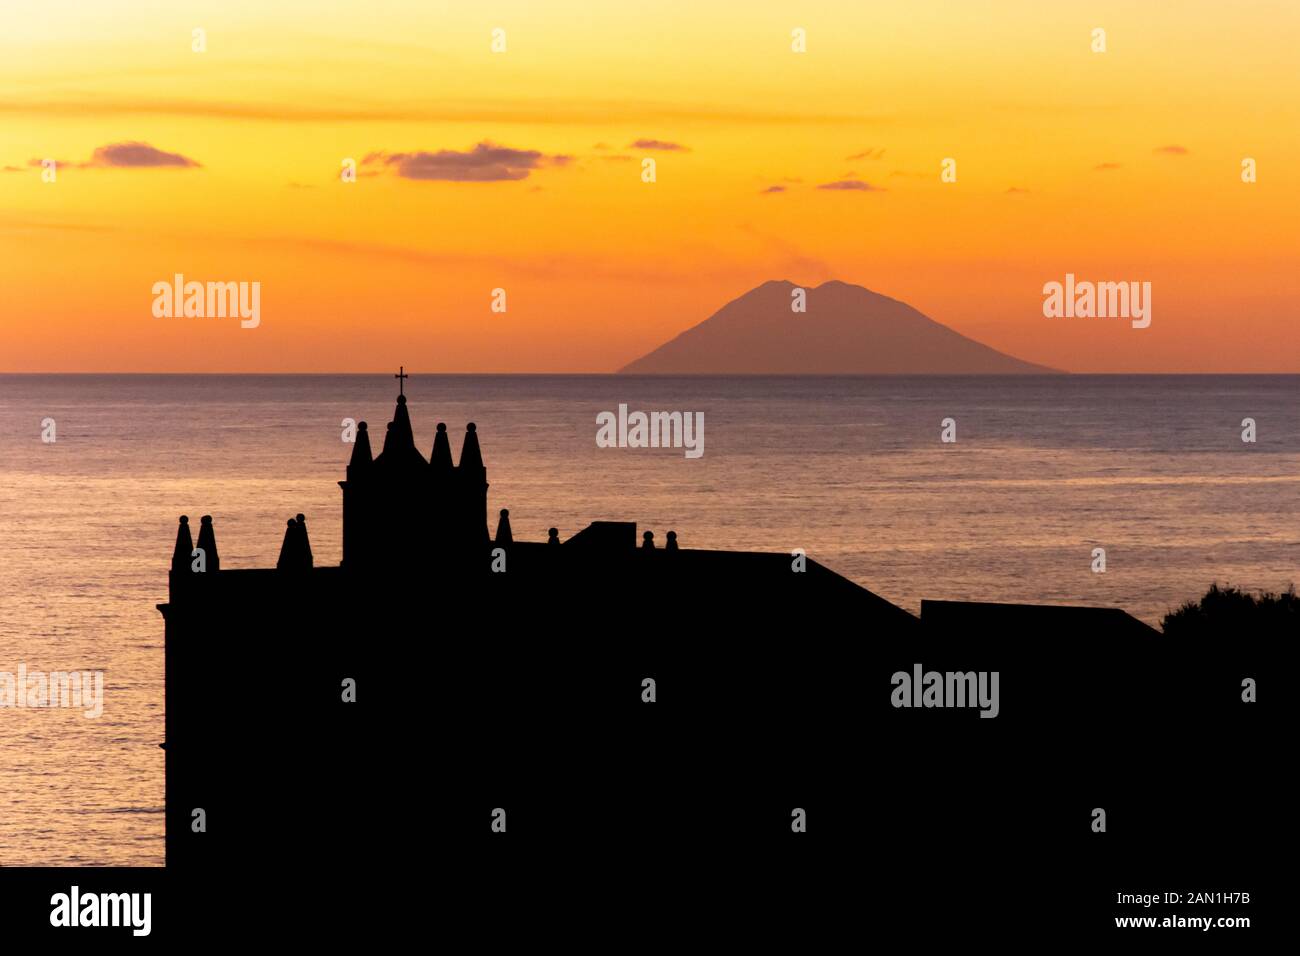 Tropea in Calabria, Italia: tramonto con il vulcano Stromboli e la chiesa di Santa Maria dell'Isola, shrineon medievale la parte superiore di un piccolo isolotto Foto Stock